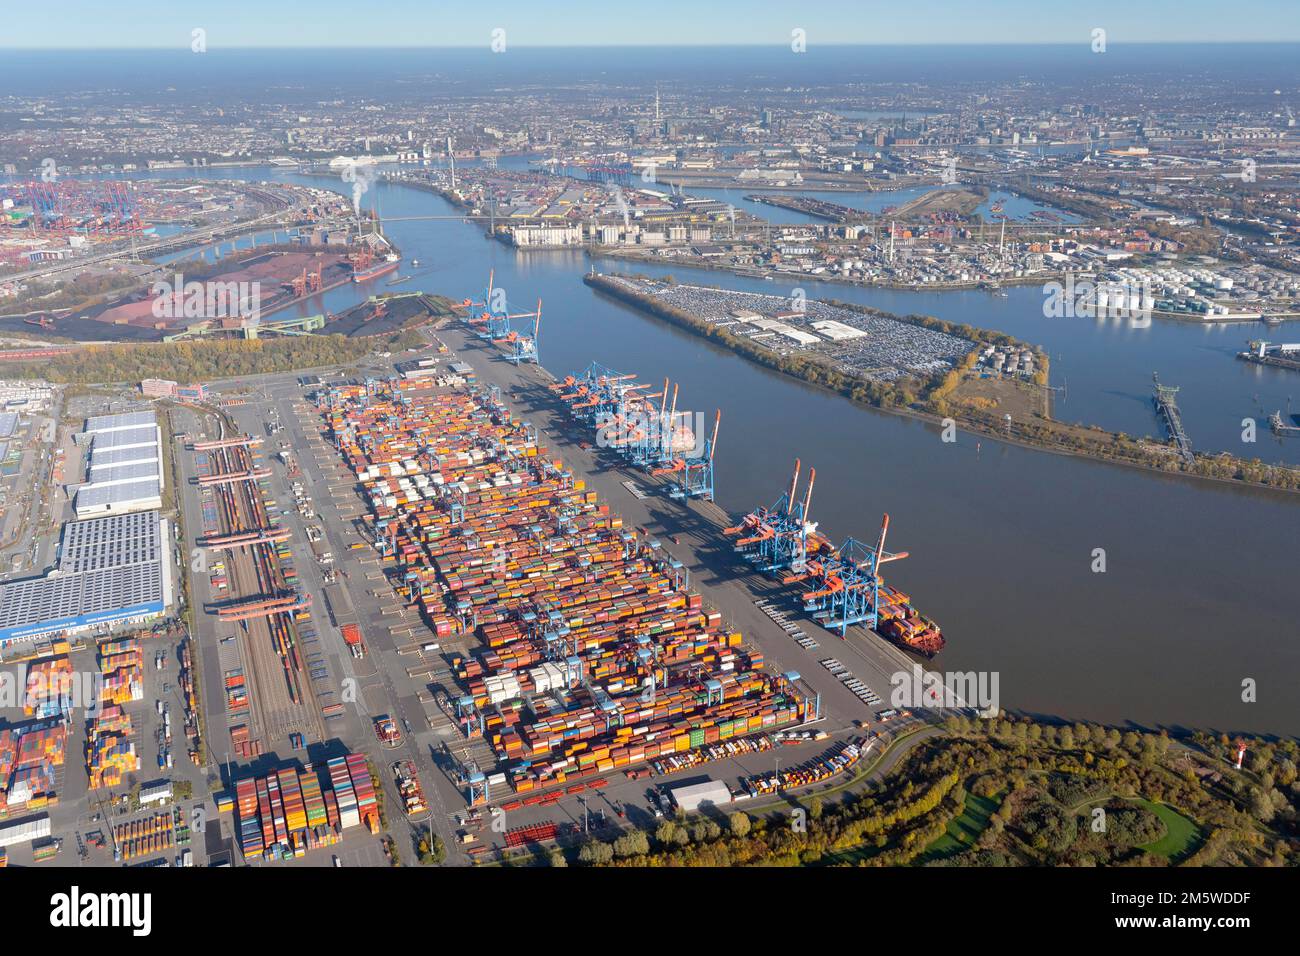 Vista aerea del terminal container Altenwerder dietro di esso il centro di Amburgo, Altenwerder, funzionamento automatizzato, container, container Foto Stock